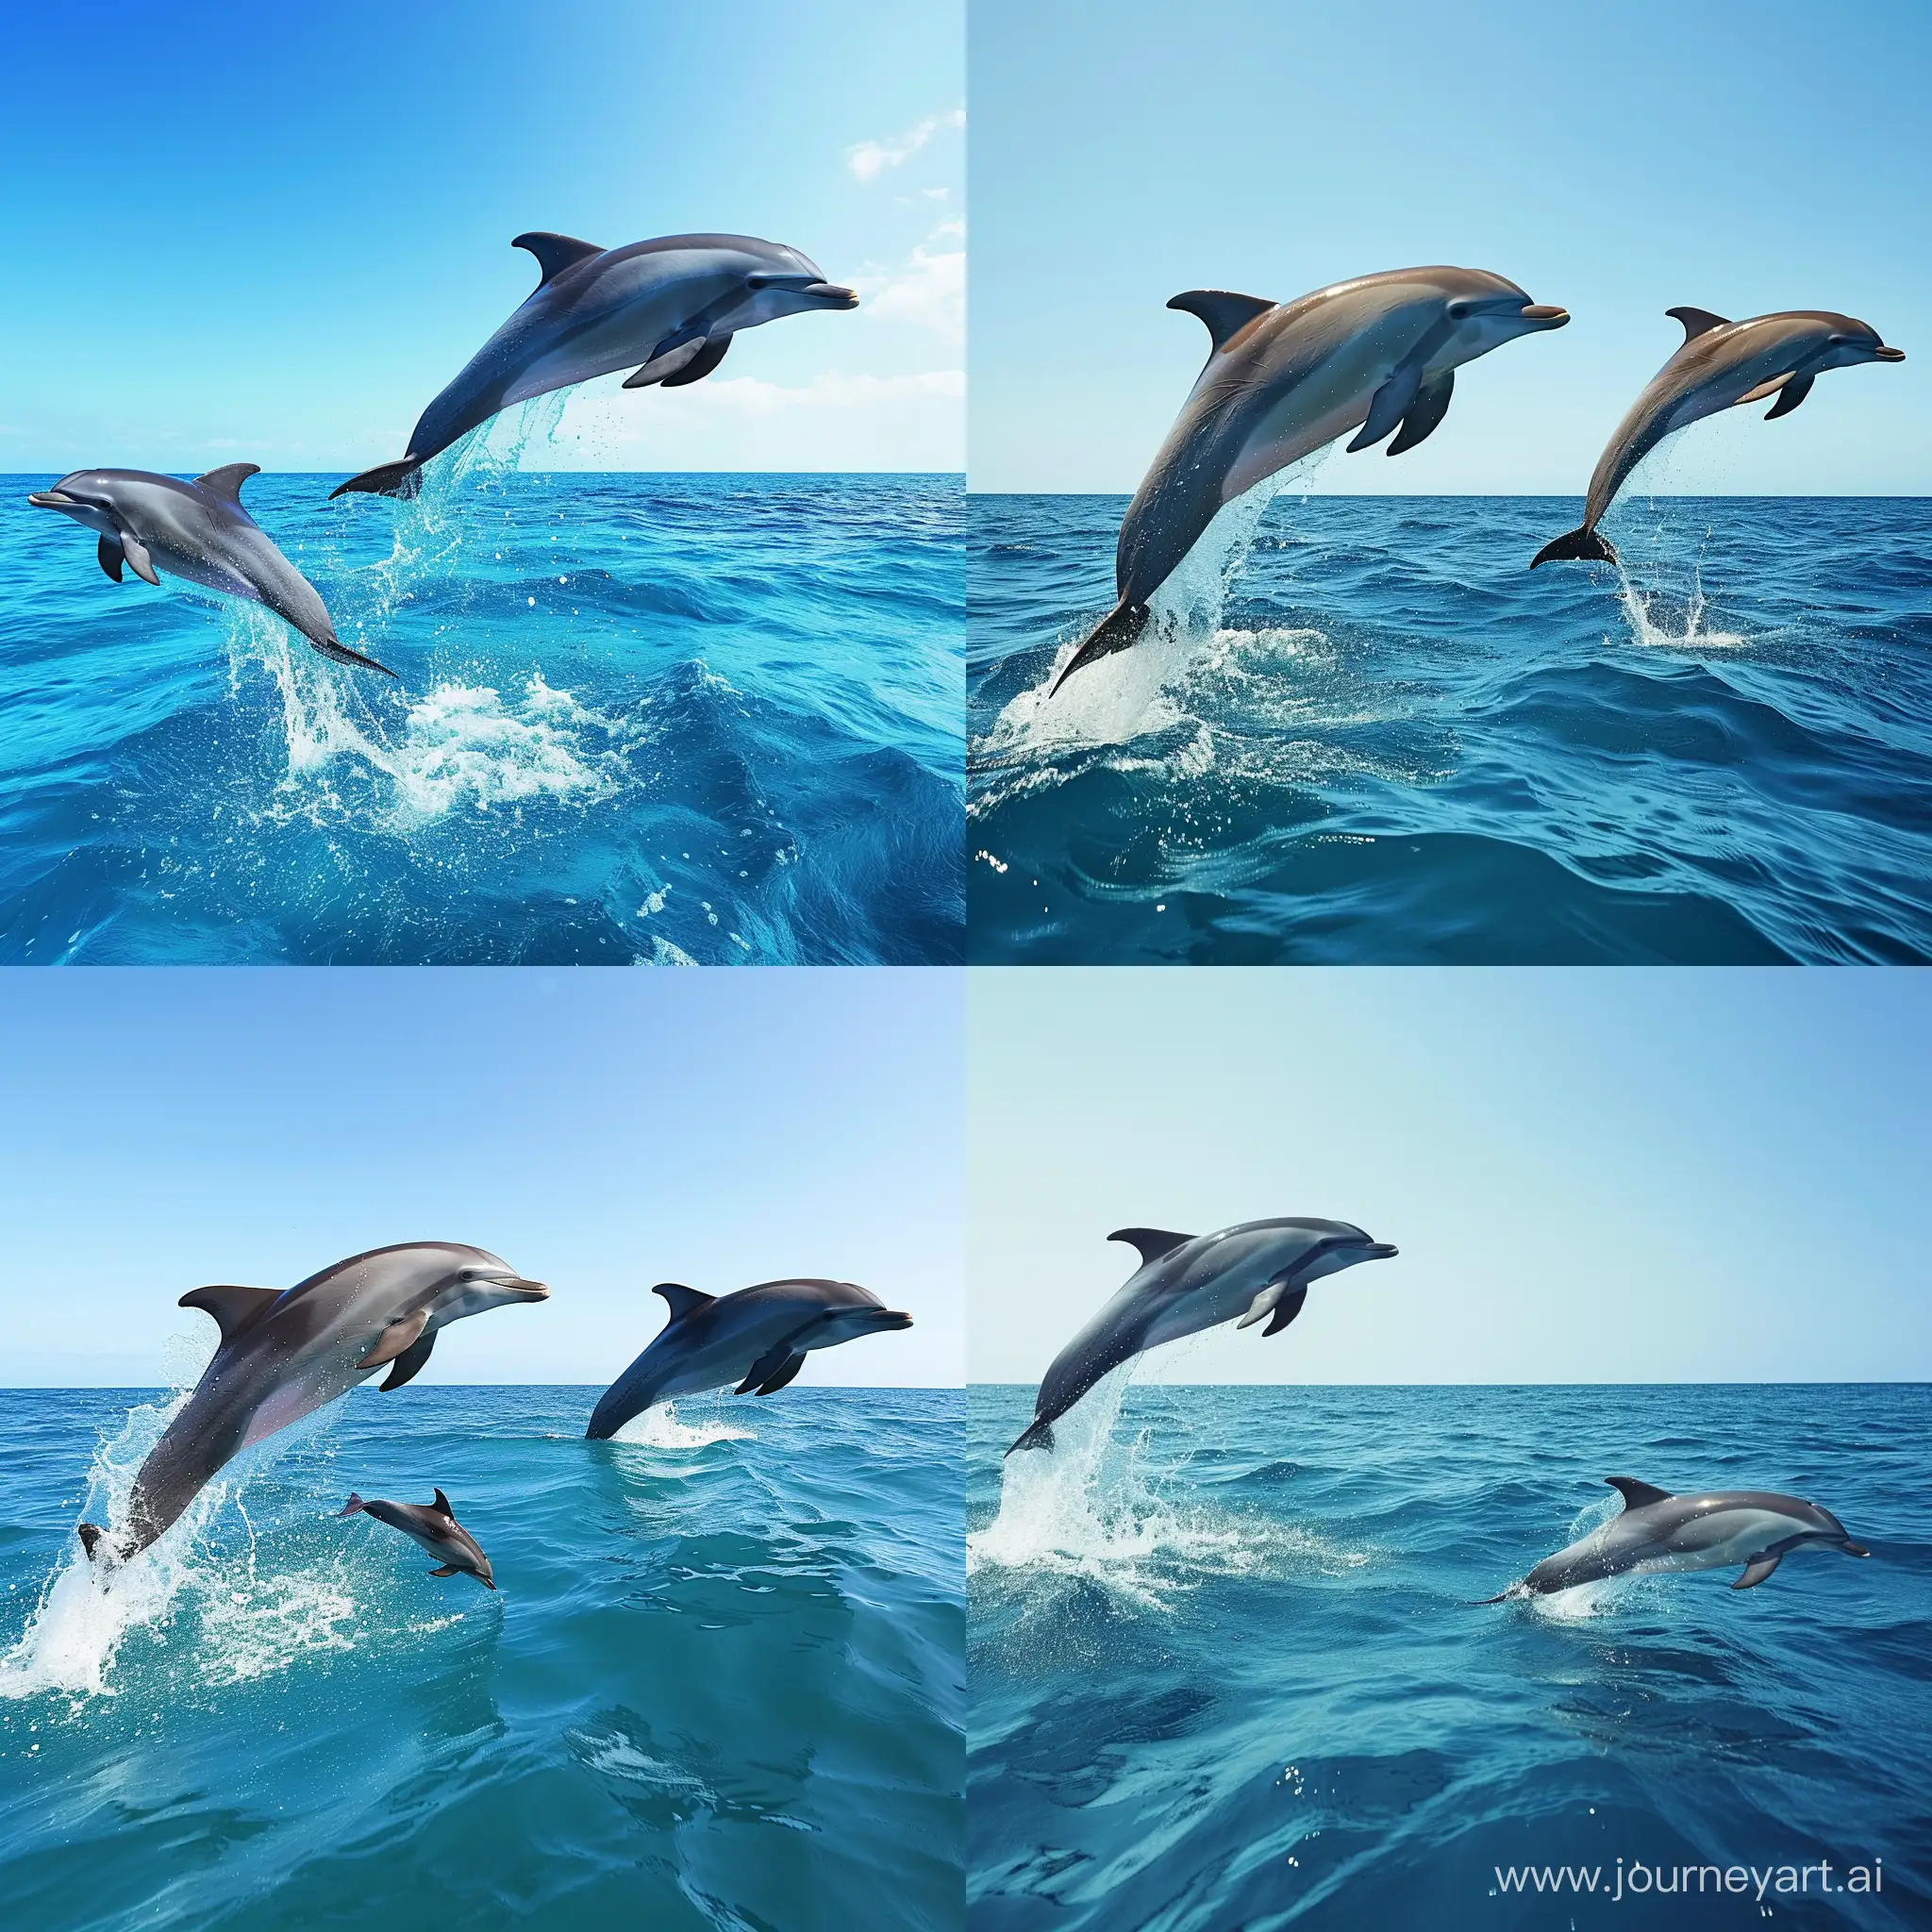 Бирюзовое море, небольшие волны,  прозрачное чистое небо, взрослый дельфин выпрыгивает из воды, рядом с ним выпрыгивает из воды дельфиненок